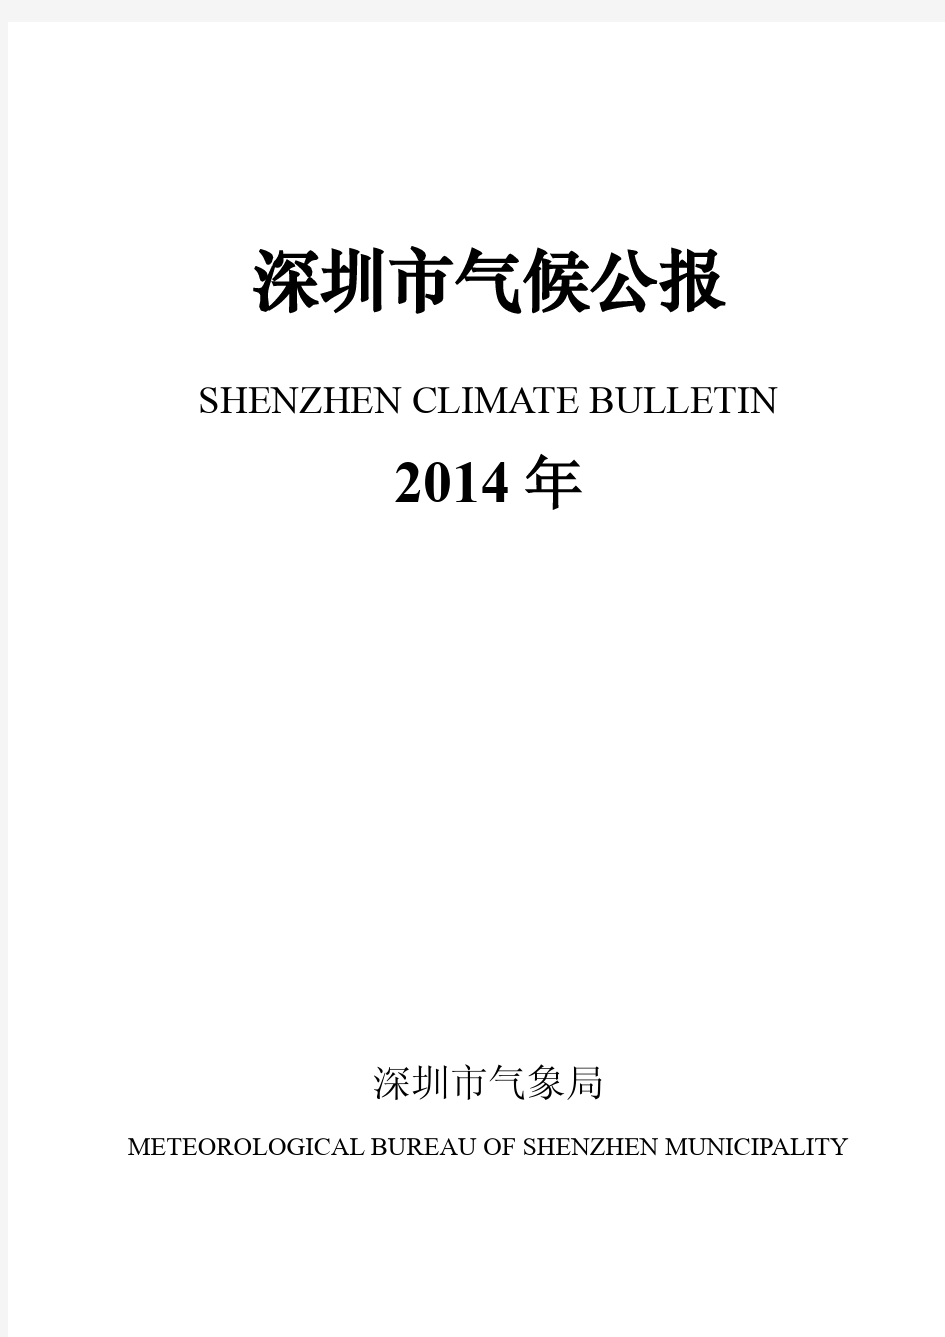 2014年深圳市气候公报